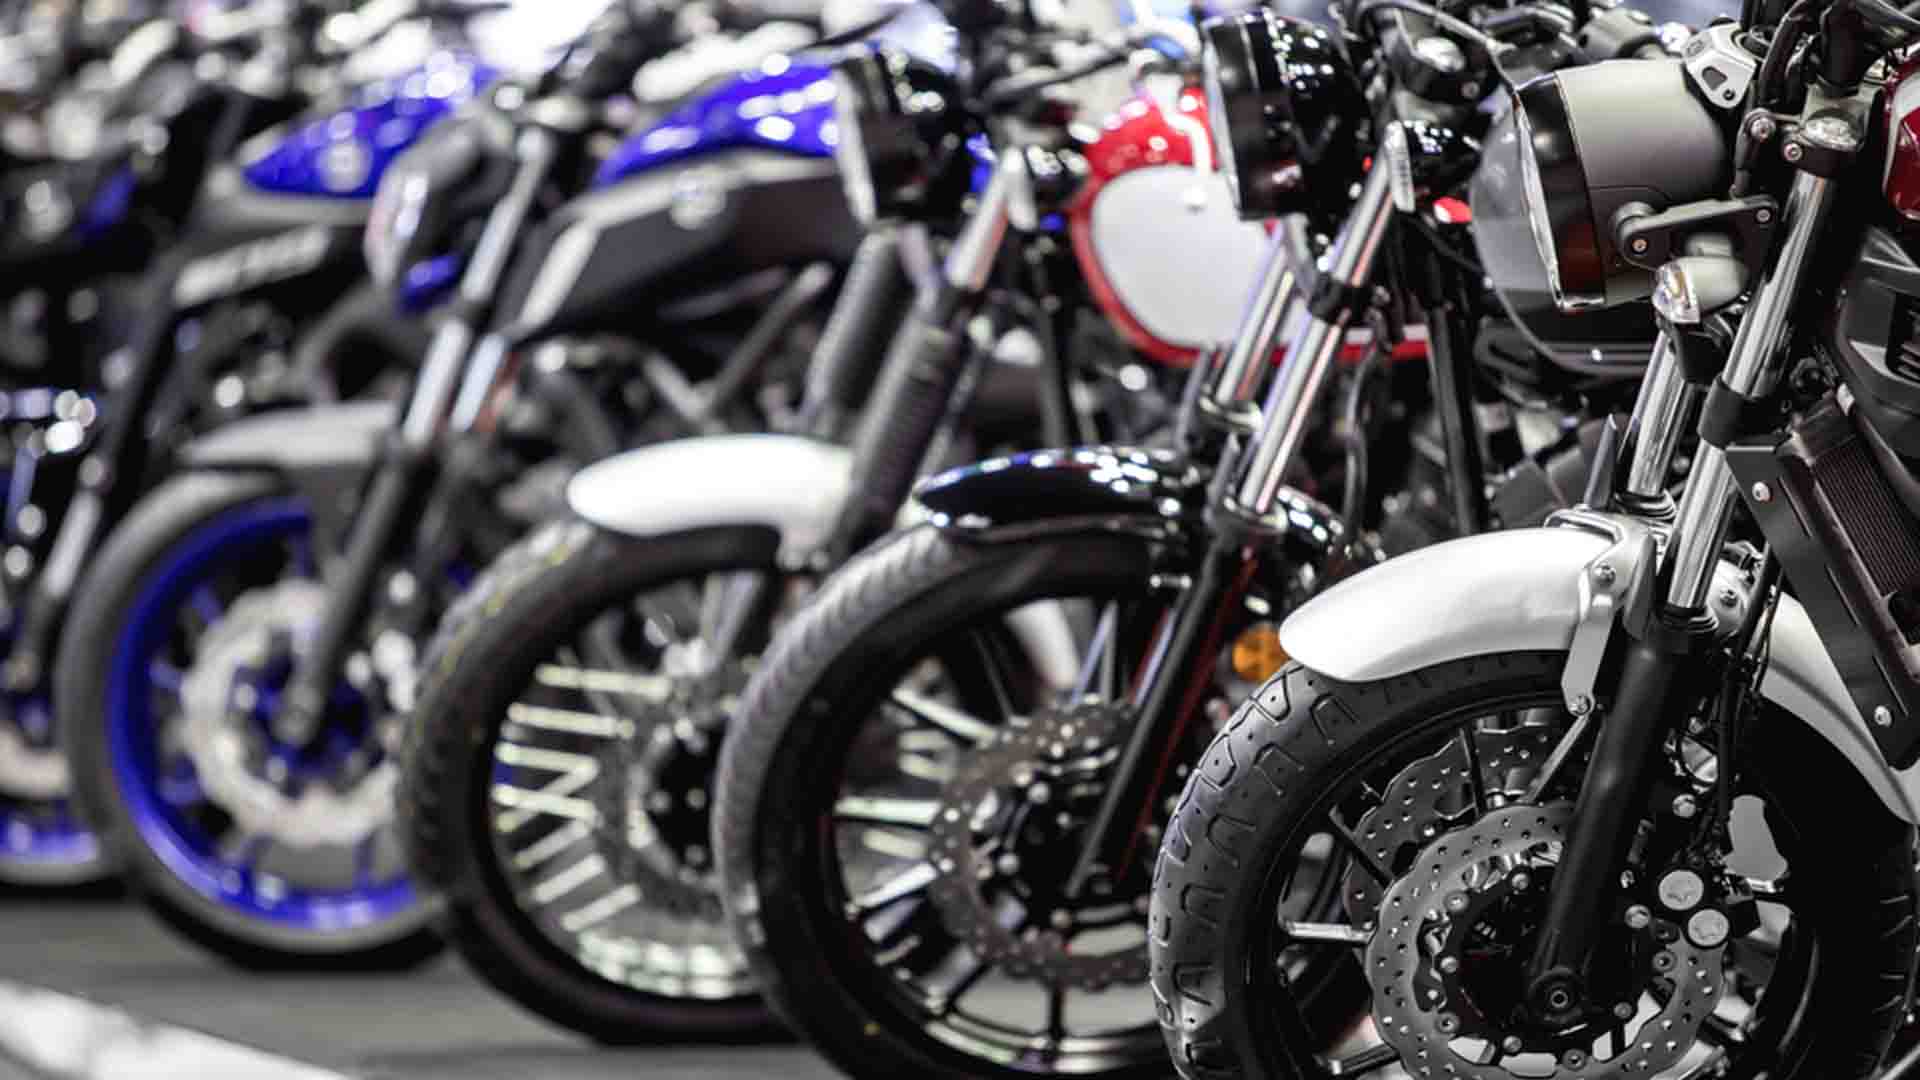 Vendas de motos sobem 34,1% em fevereiro ante fevereiro de 2022, diz Fenabrave